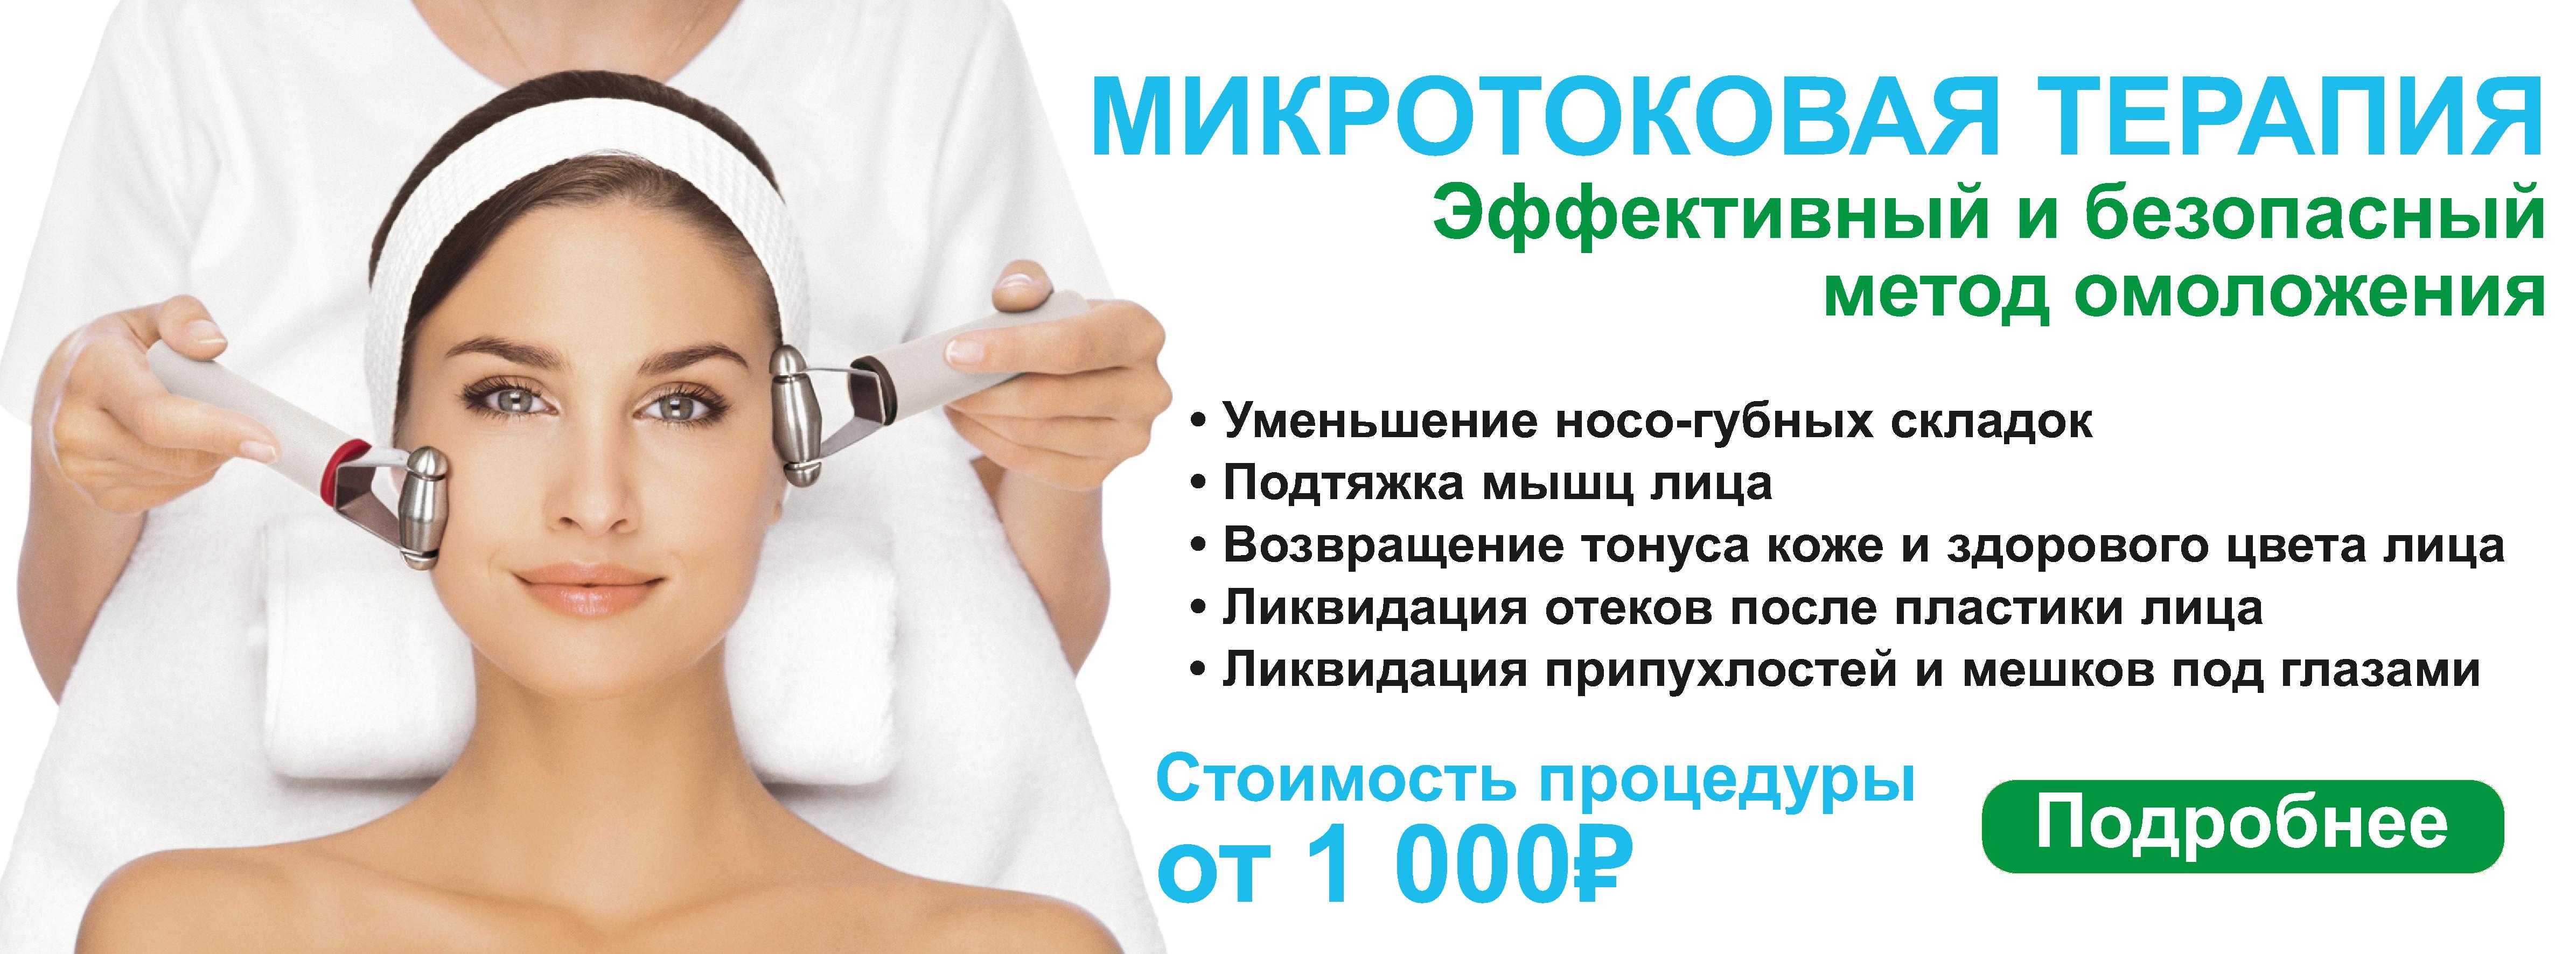 Массажер для лица: польза нефритового, роликового, микротокового, инфракрасного, кварцевого, инструкция по применению